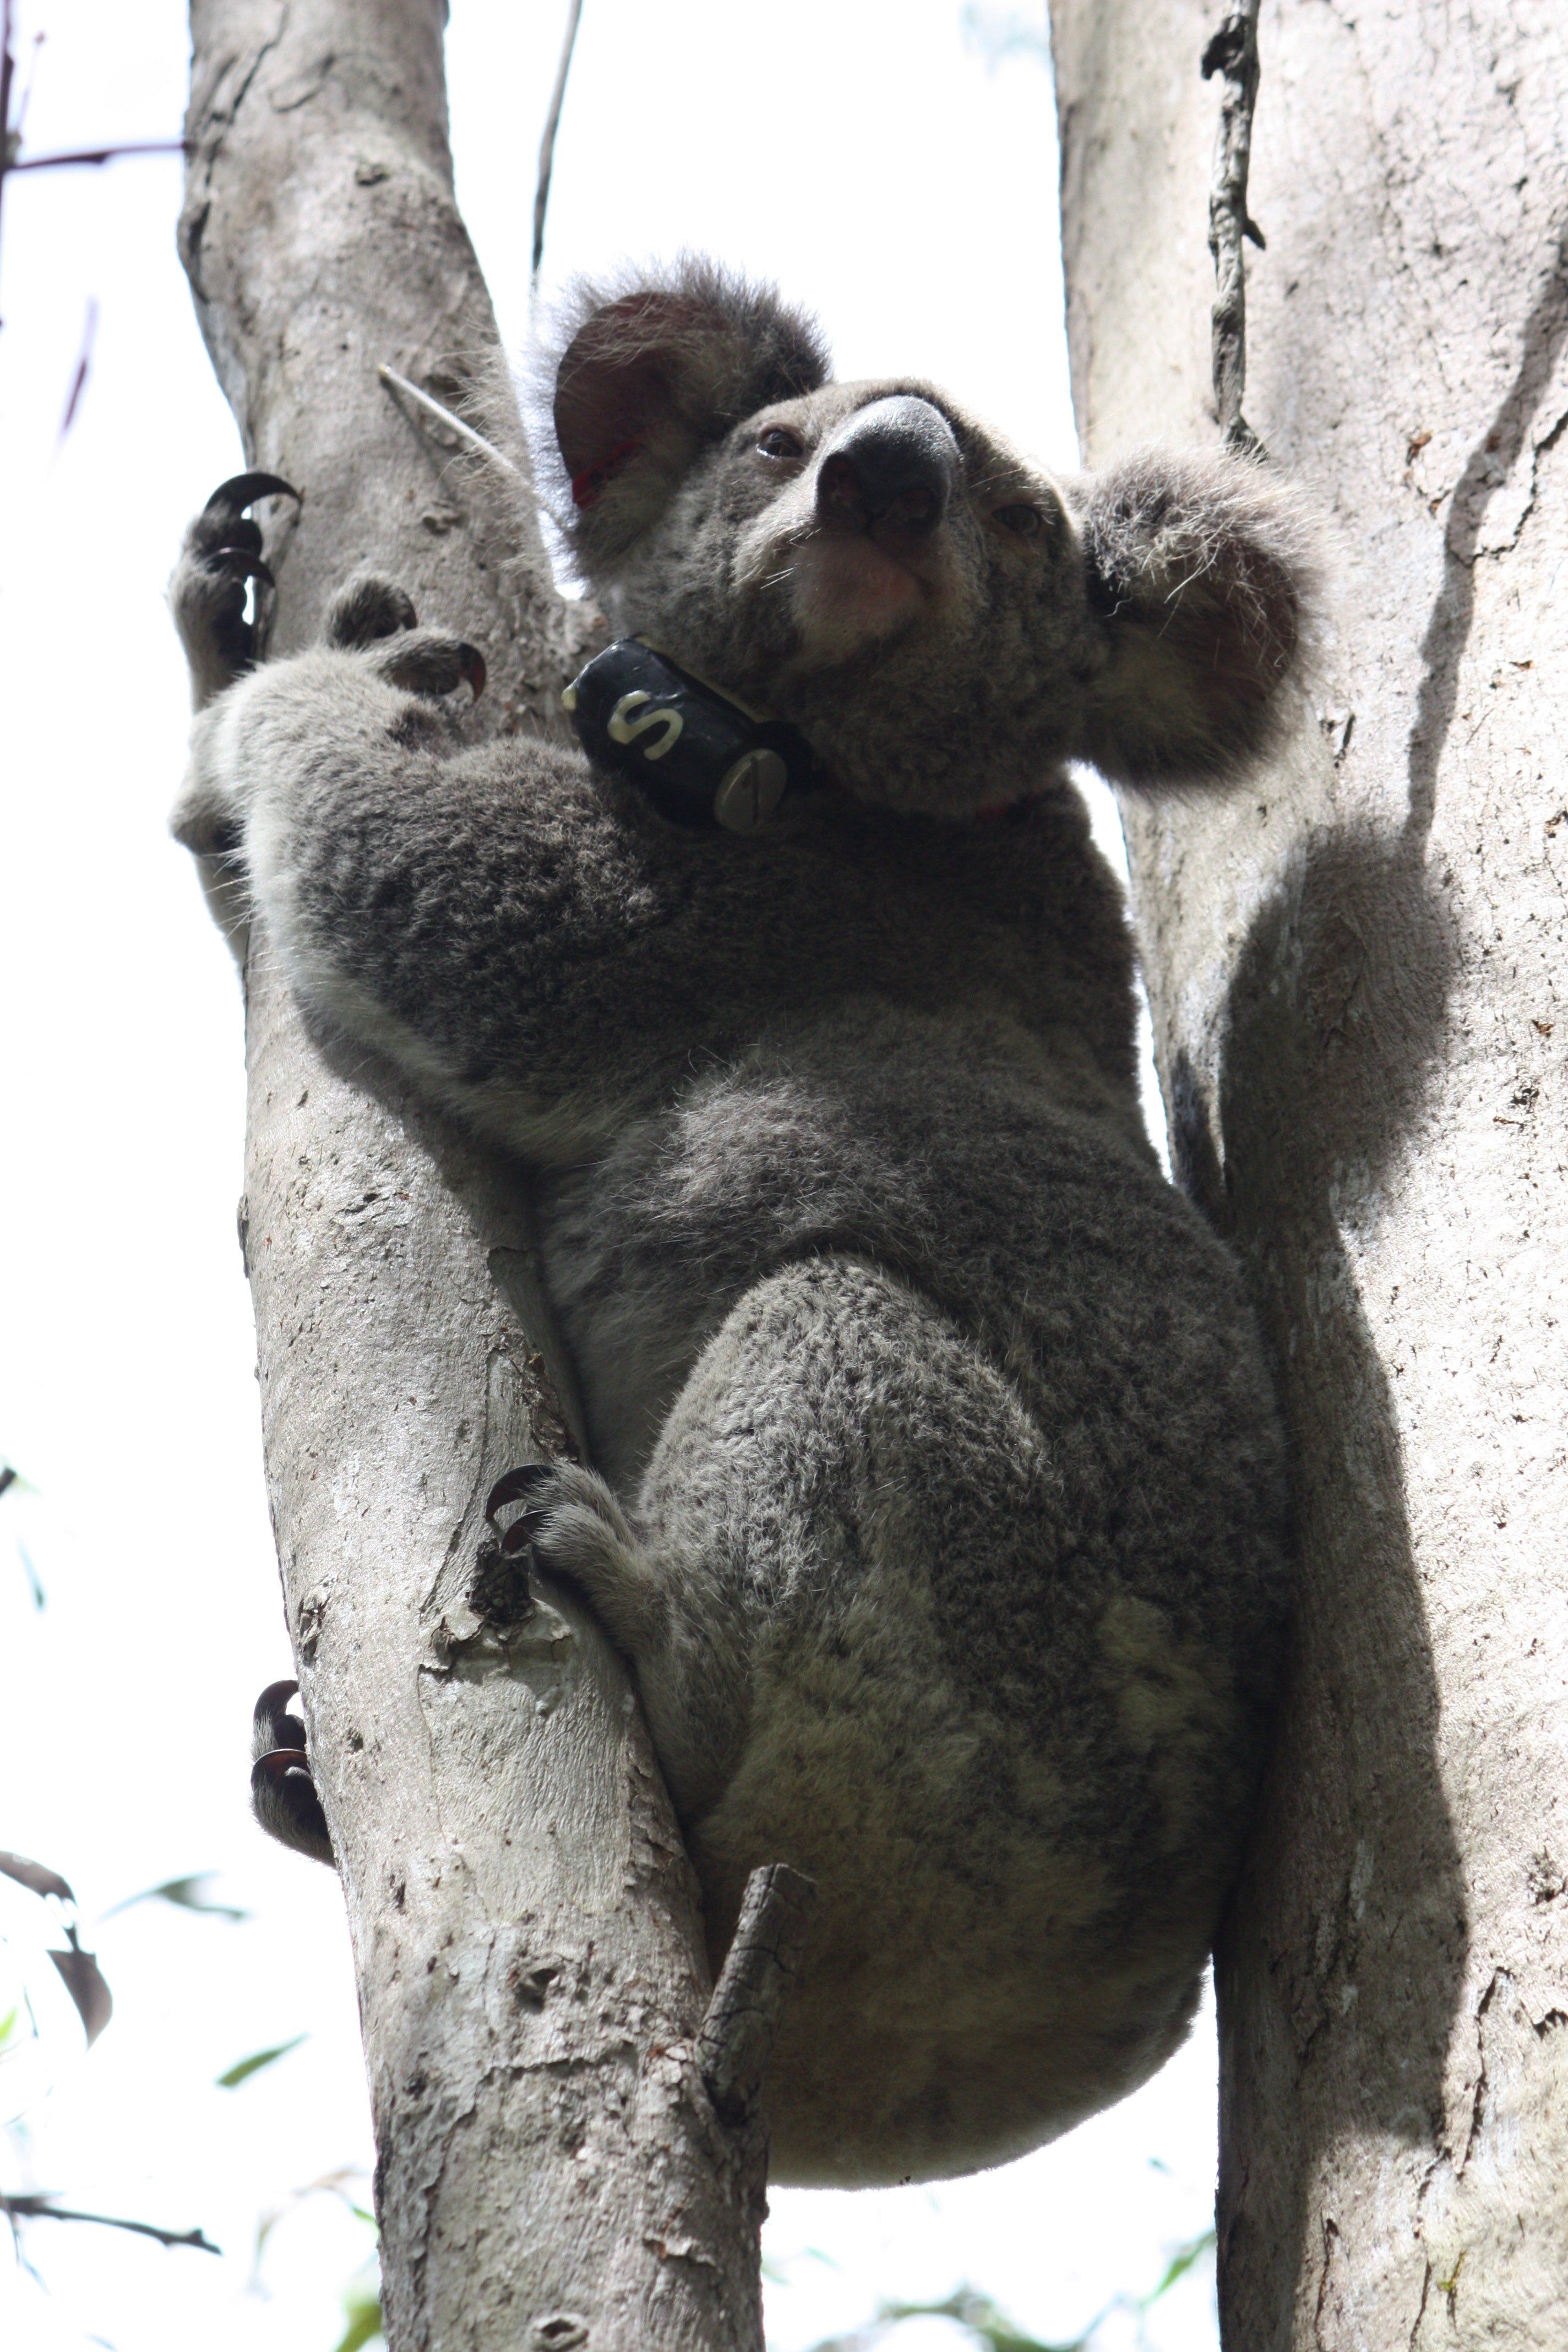 Do koalas spank